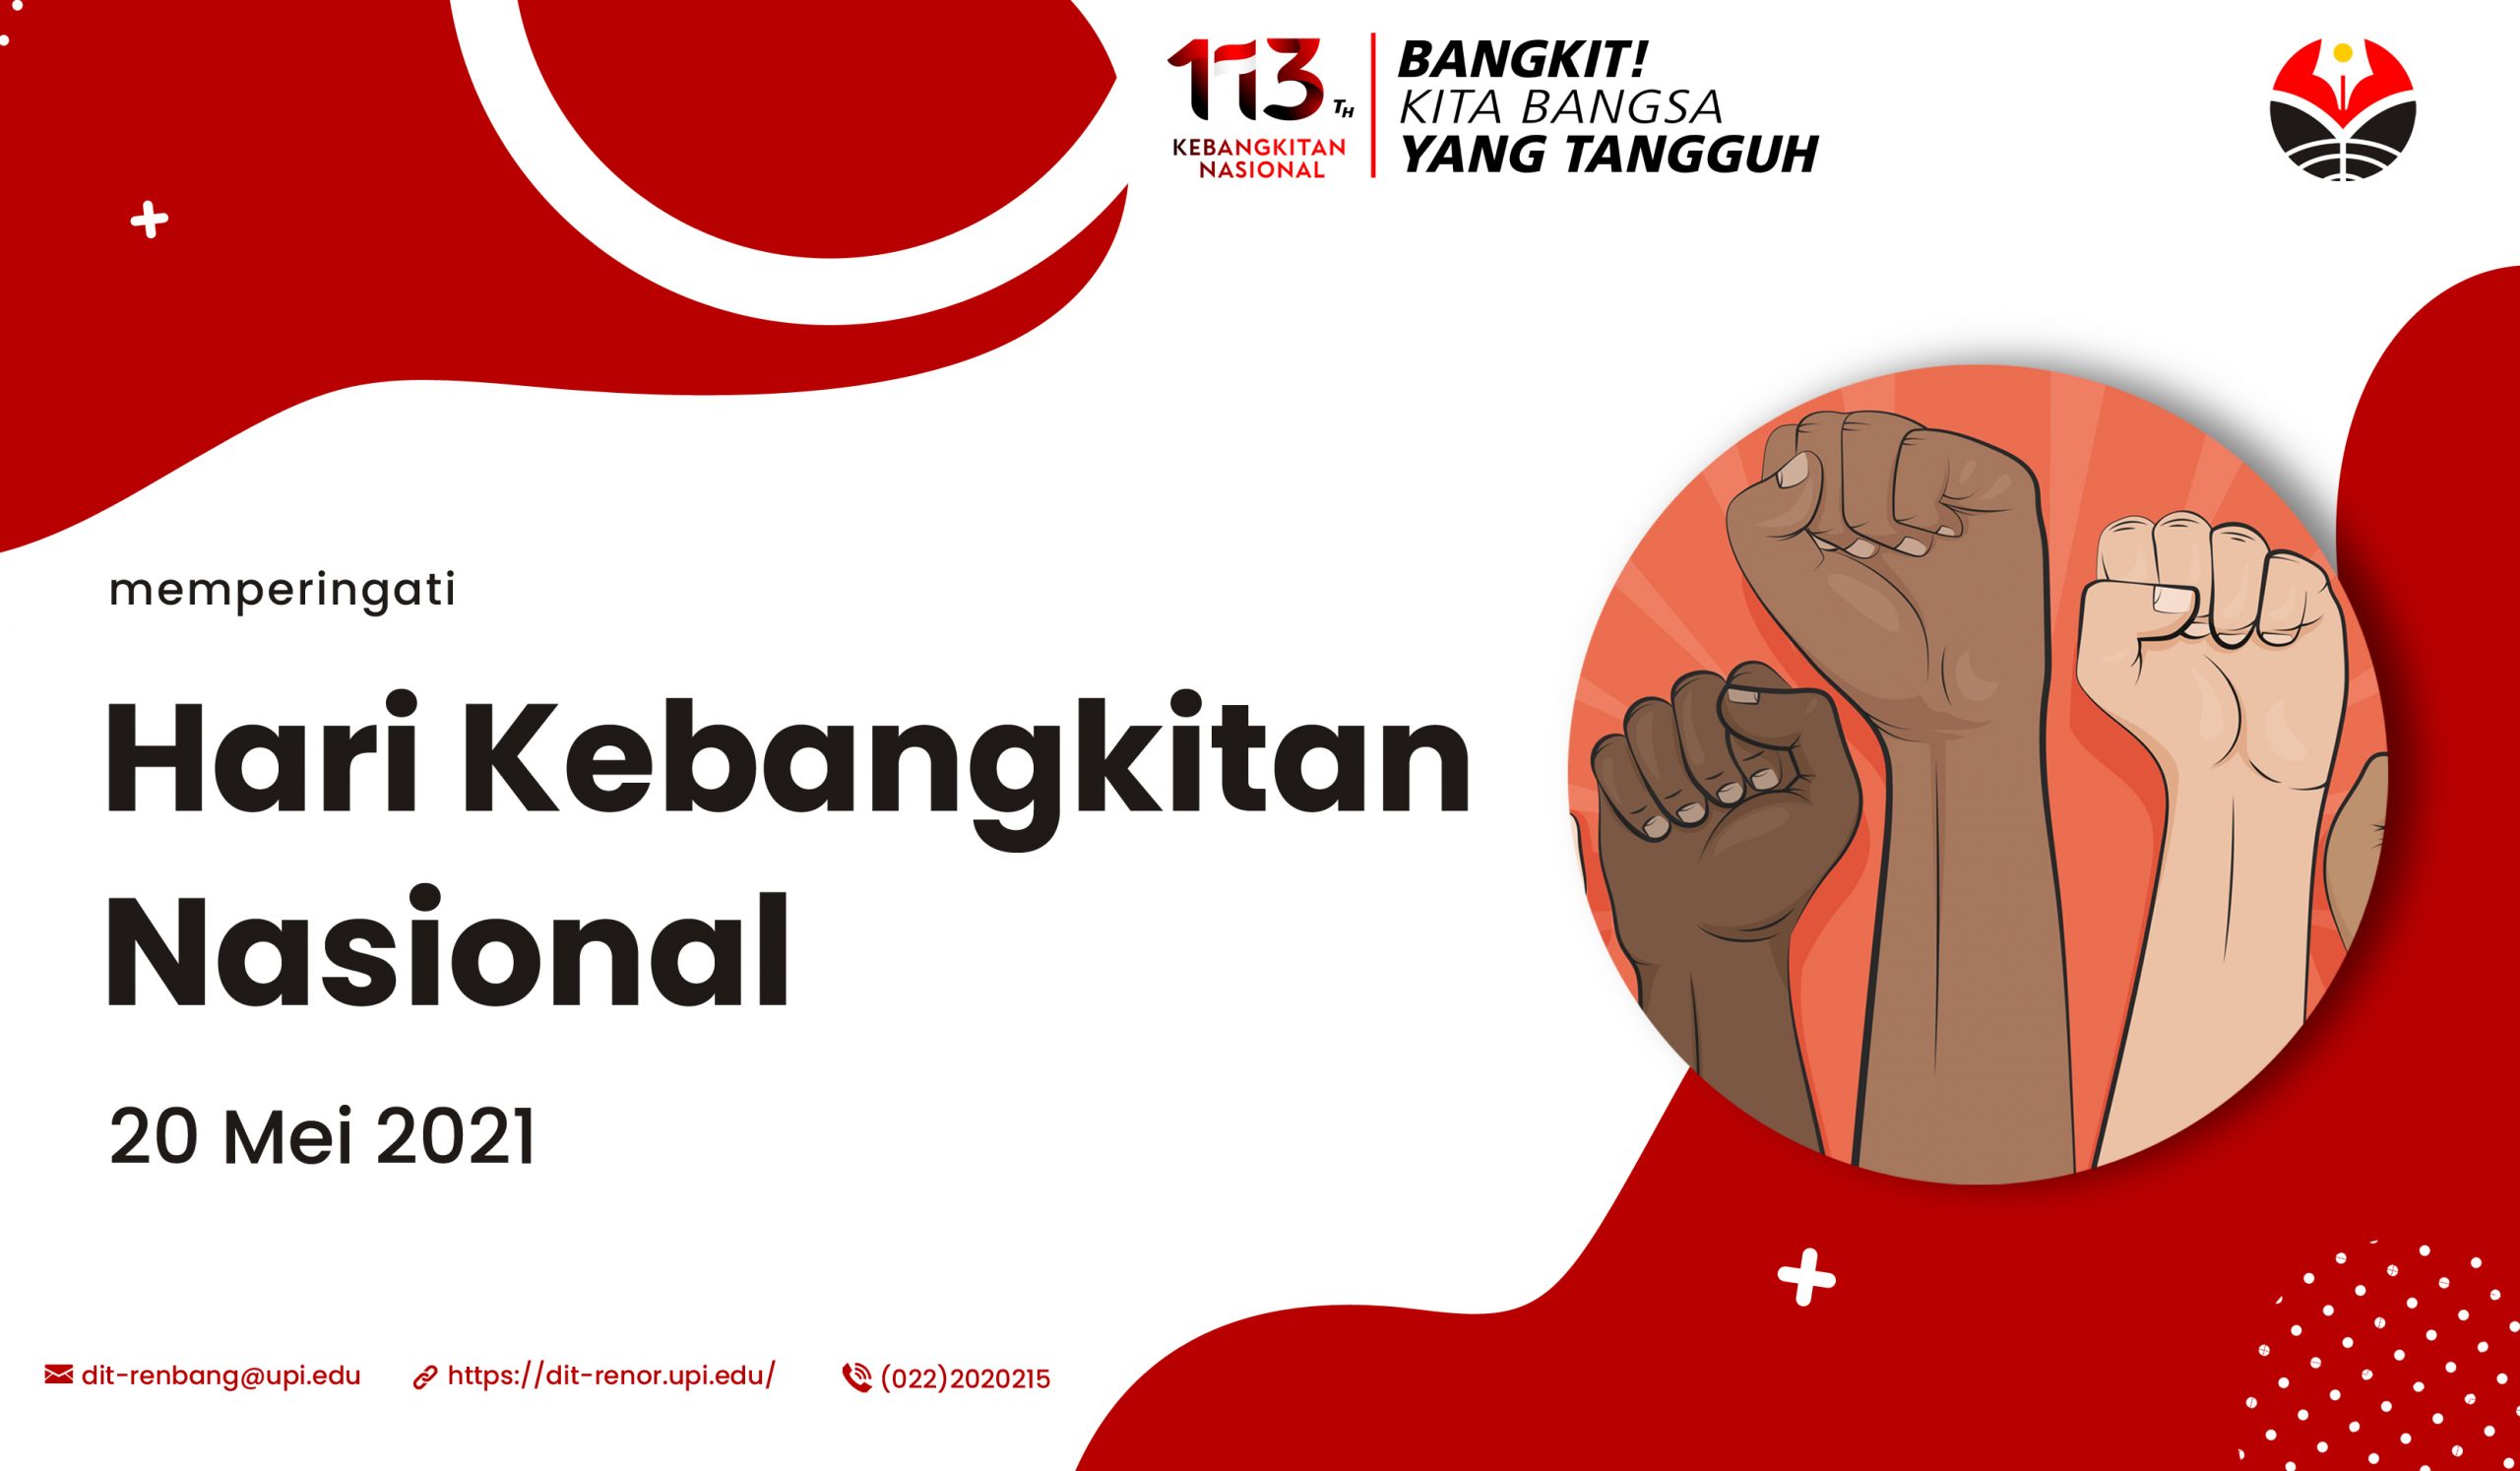 You are currently viewing Hari Kebangkitan Nasional ke-113